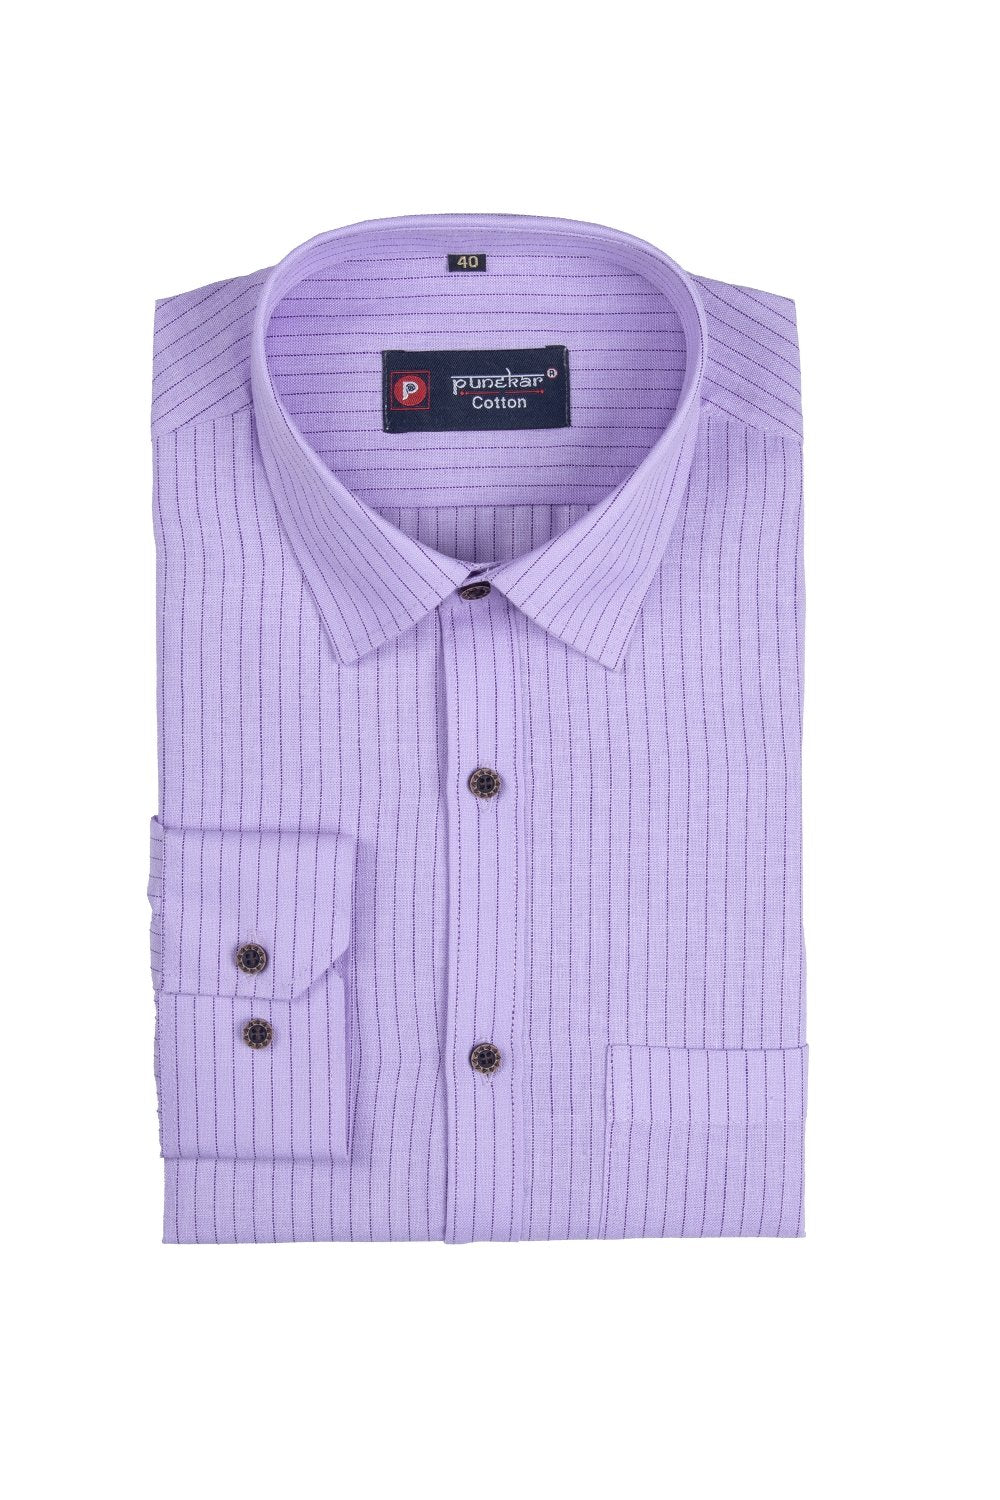 Punekar Cotton Purple Color Linning Criss Cross Woven Cotton Shirt for Men's. - Punekar Cotton